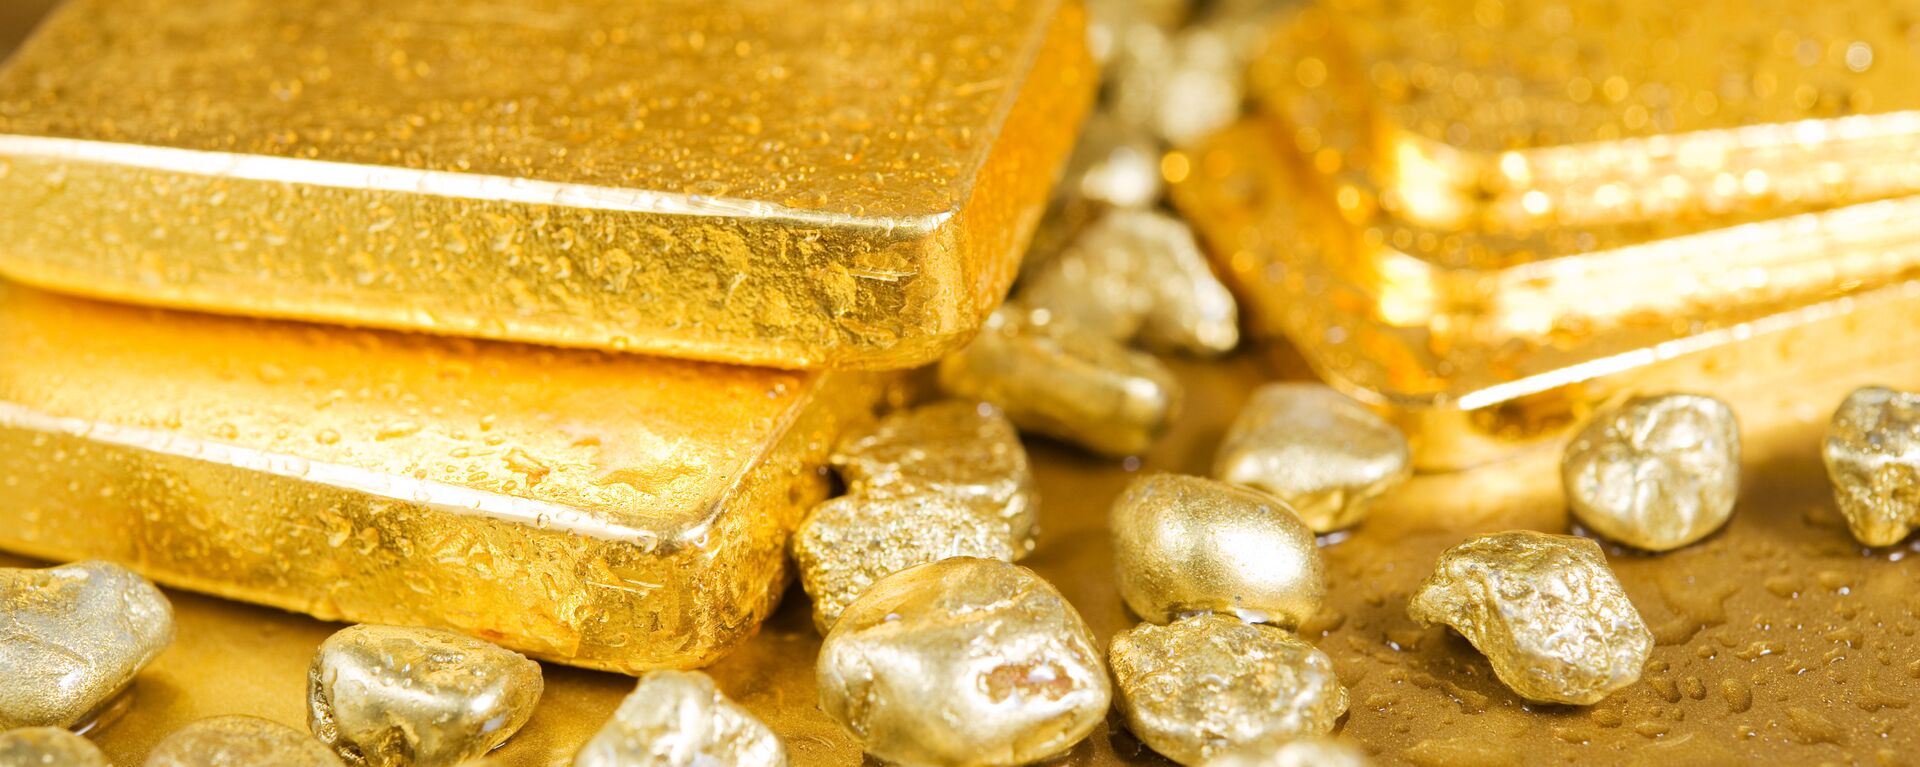 تب طلا؛ بزرگترین معدن جهان بعد از دهه ها راه اندازی می شود - اسپوتنیک ایران  , 1920, 27.10.2020